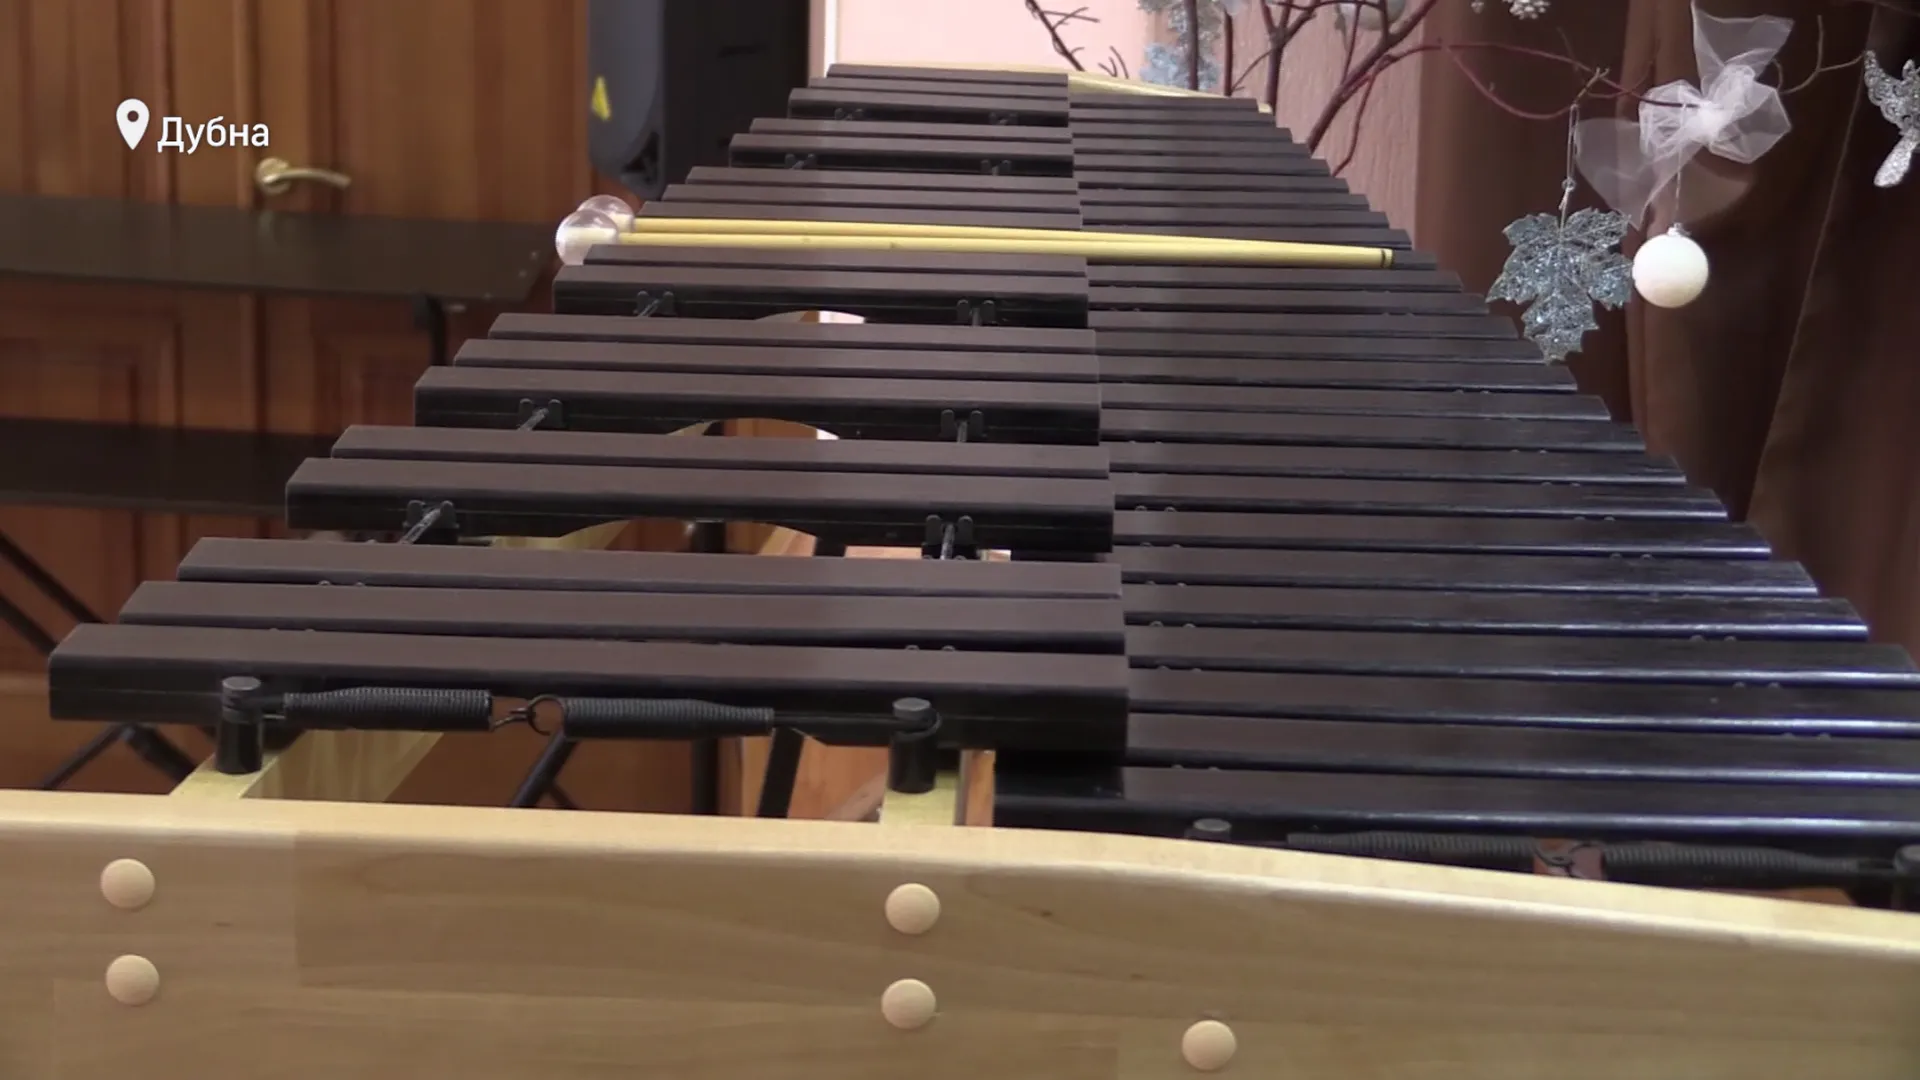 Новый ксилофон подарили музыкальной школе Дубны. Занятия начнутся с 1 сентября